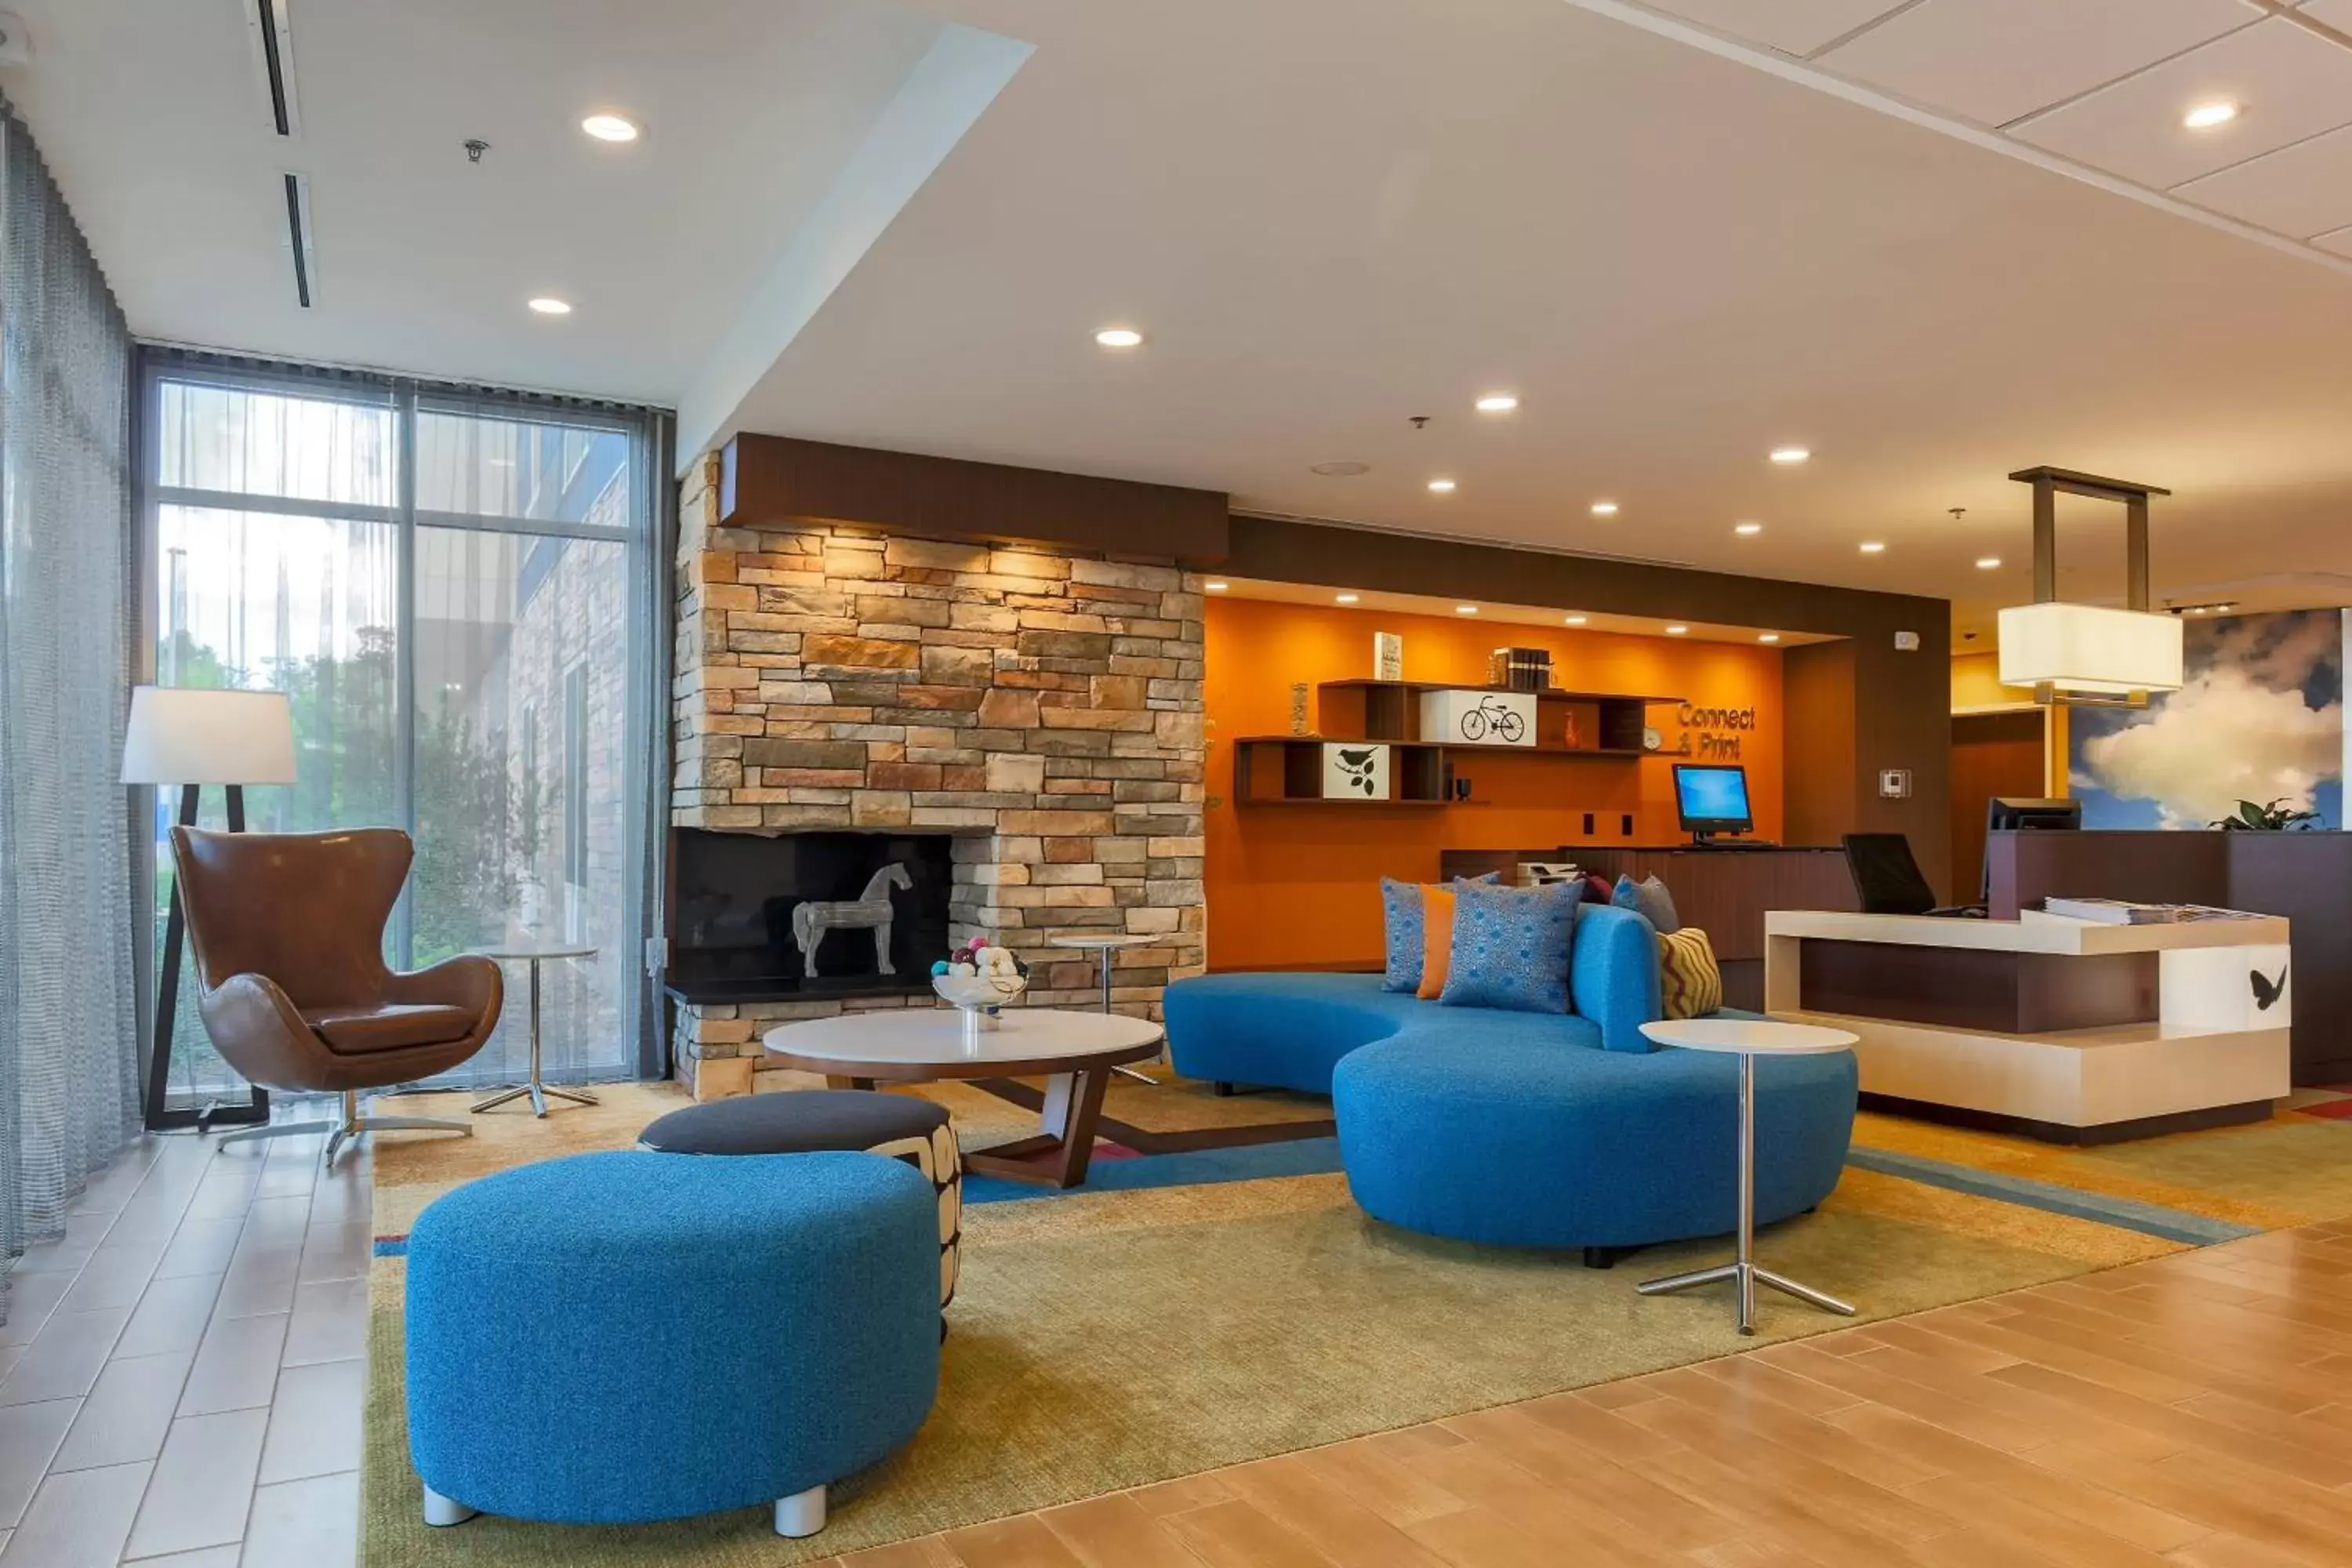 Lobby or reception, Lobby/Reception in Fairfield Inn & Suites by Marriott Alexandria